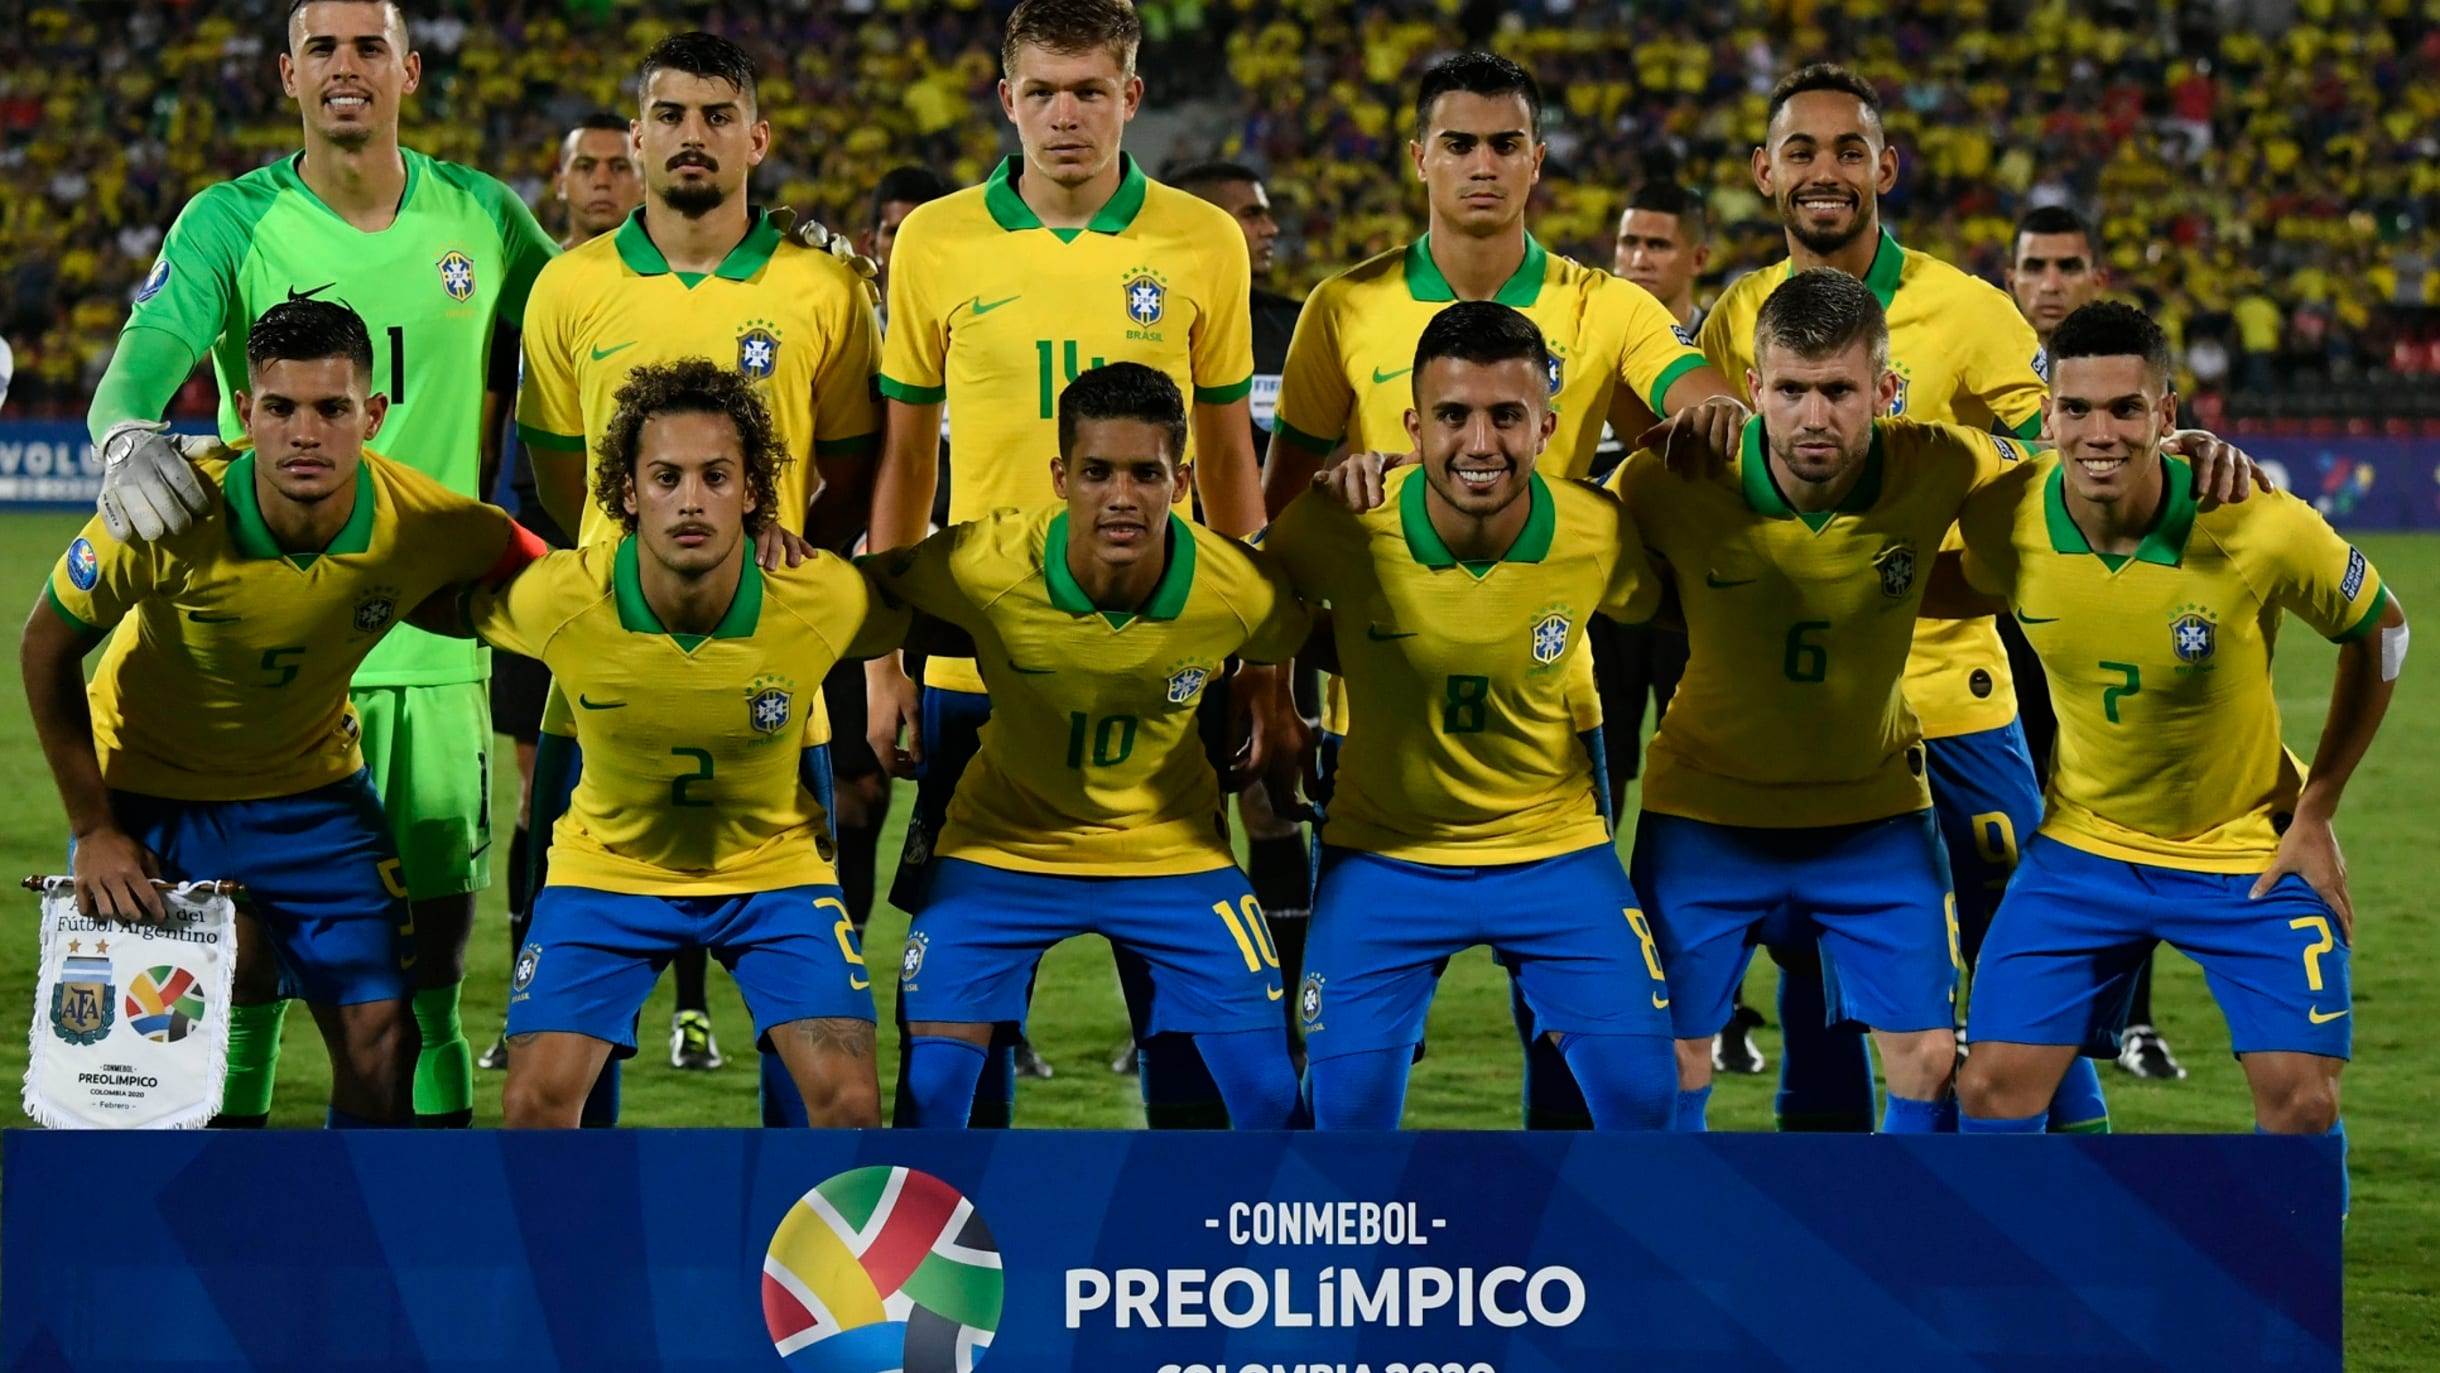 サッカー 豪華陣容のu 23ブラジル代表メンバーが発表 だが対戦相手は未定